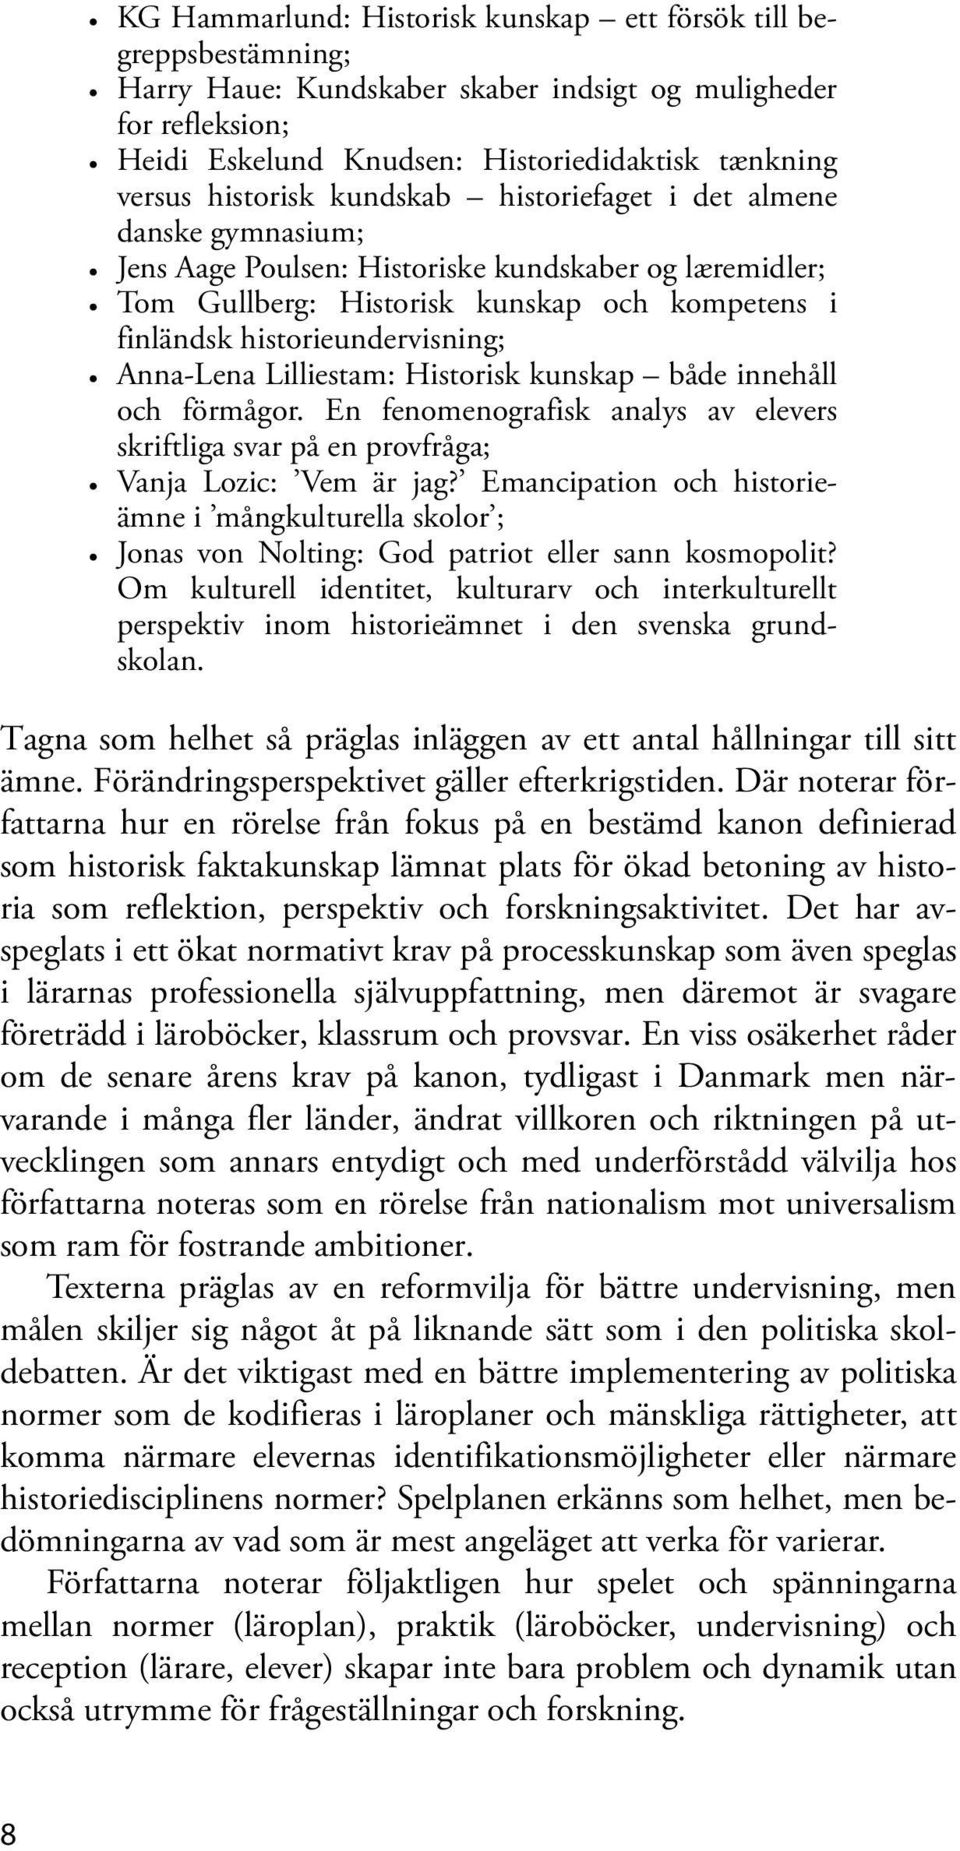 Anna-Lena Lilliestam: Historisk kunskap både innehåll och förmågor. En fenomenografisk analys av elevers skriftliga svar på en provfråga; Vanja Lozic: Vem är jag?